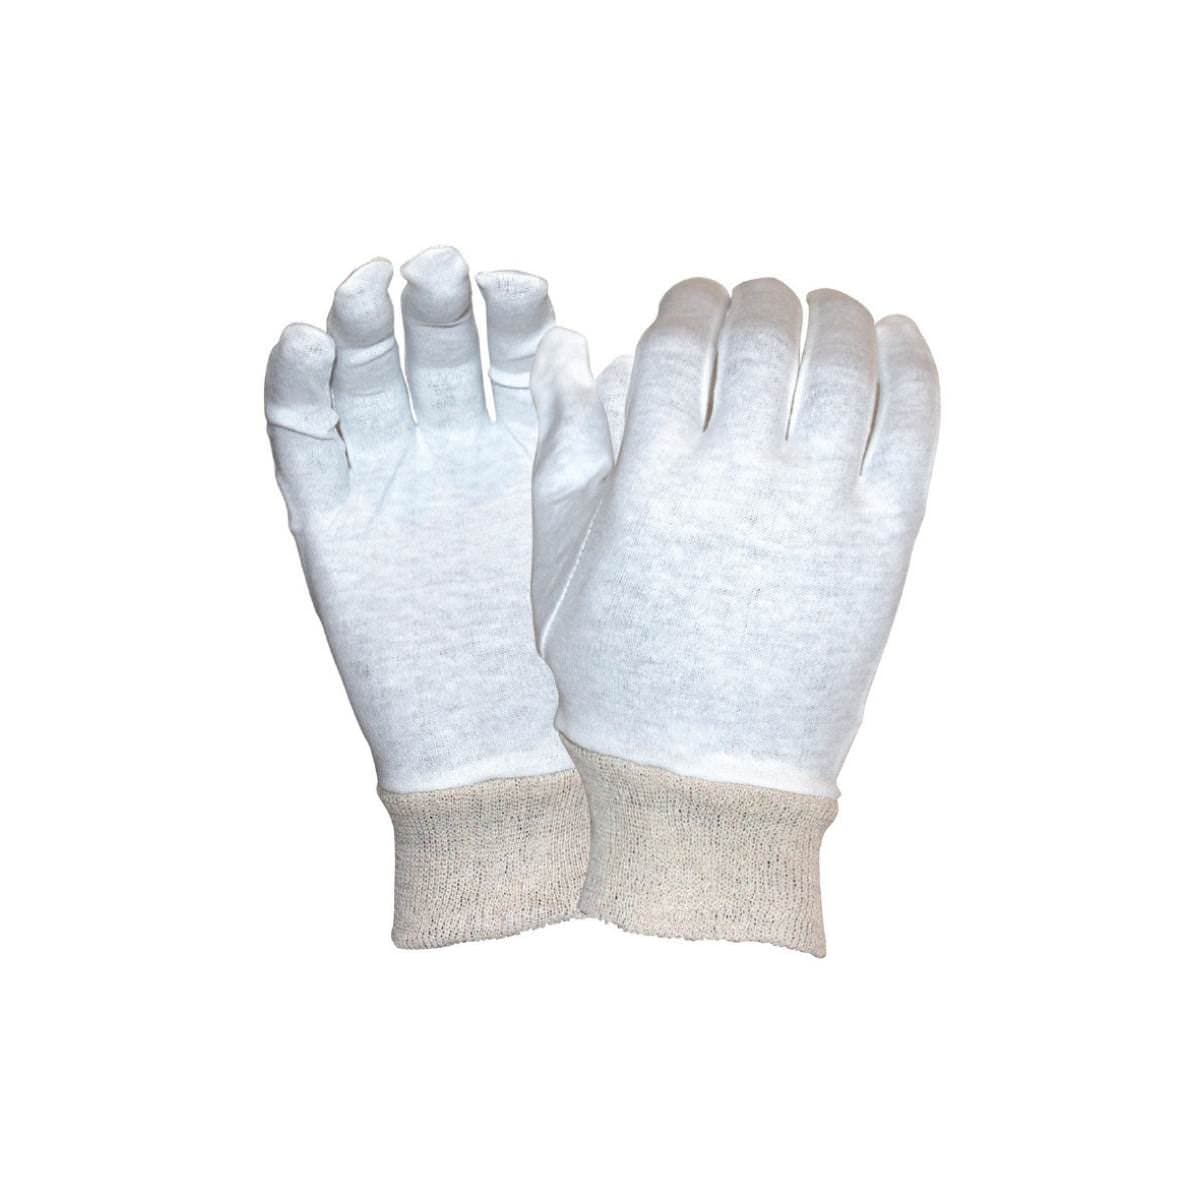 SafeRite® Interlock Men's Knit Wrist Glove SR212MK (Pack of 12)